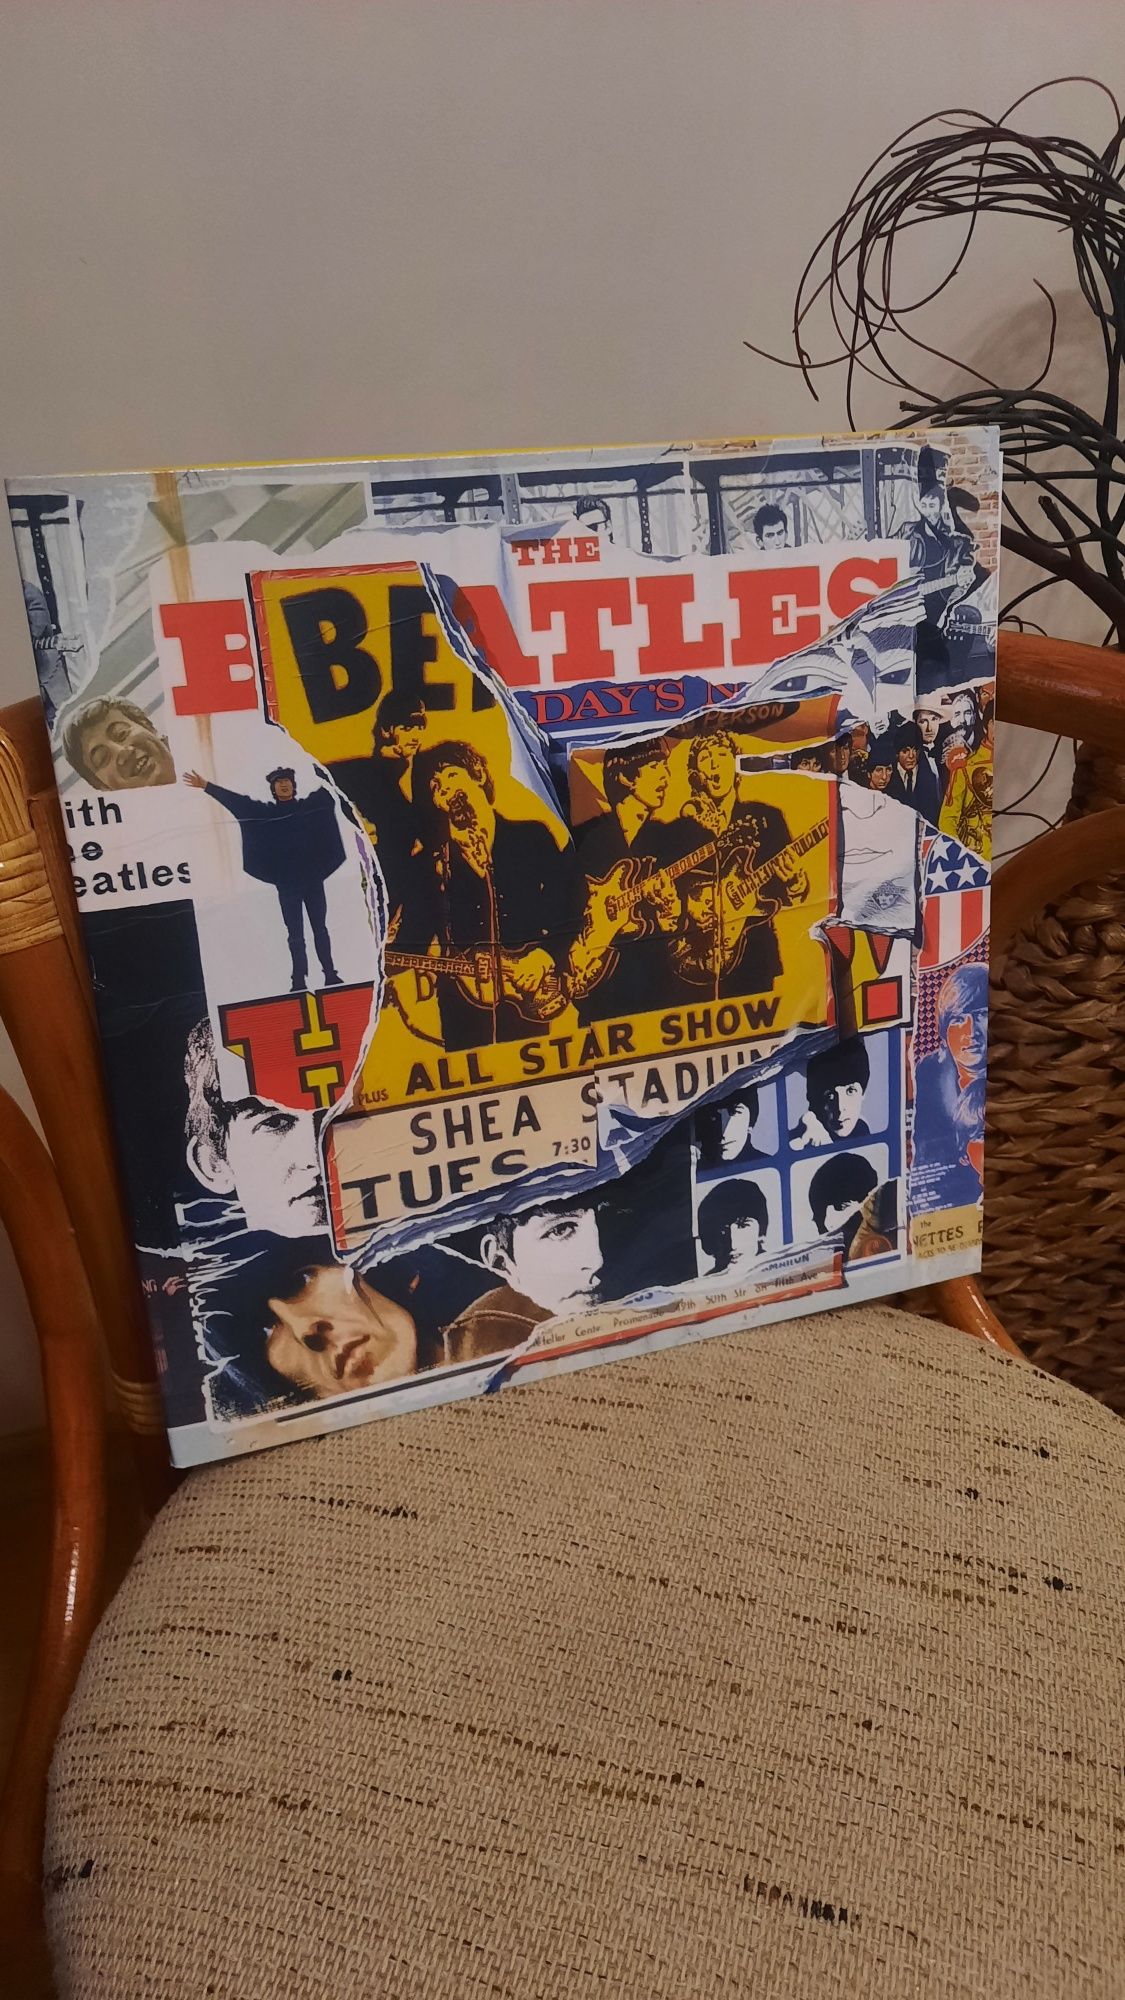 Коллекция пластинок The Beatles "Anthology" [1,2,3]